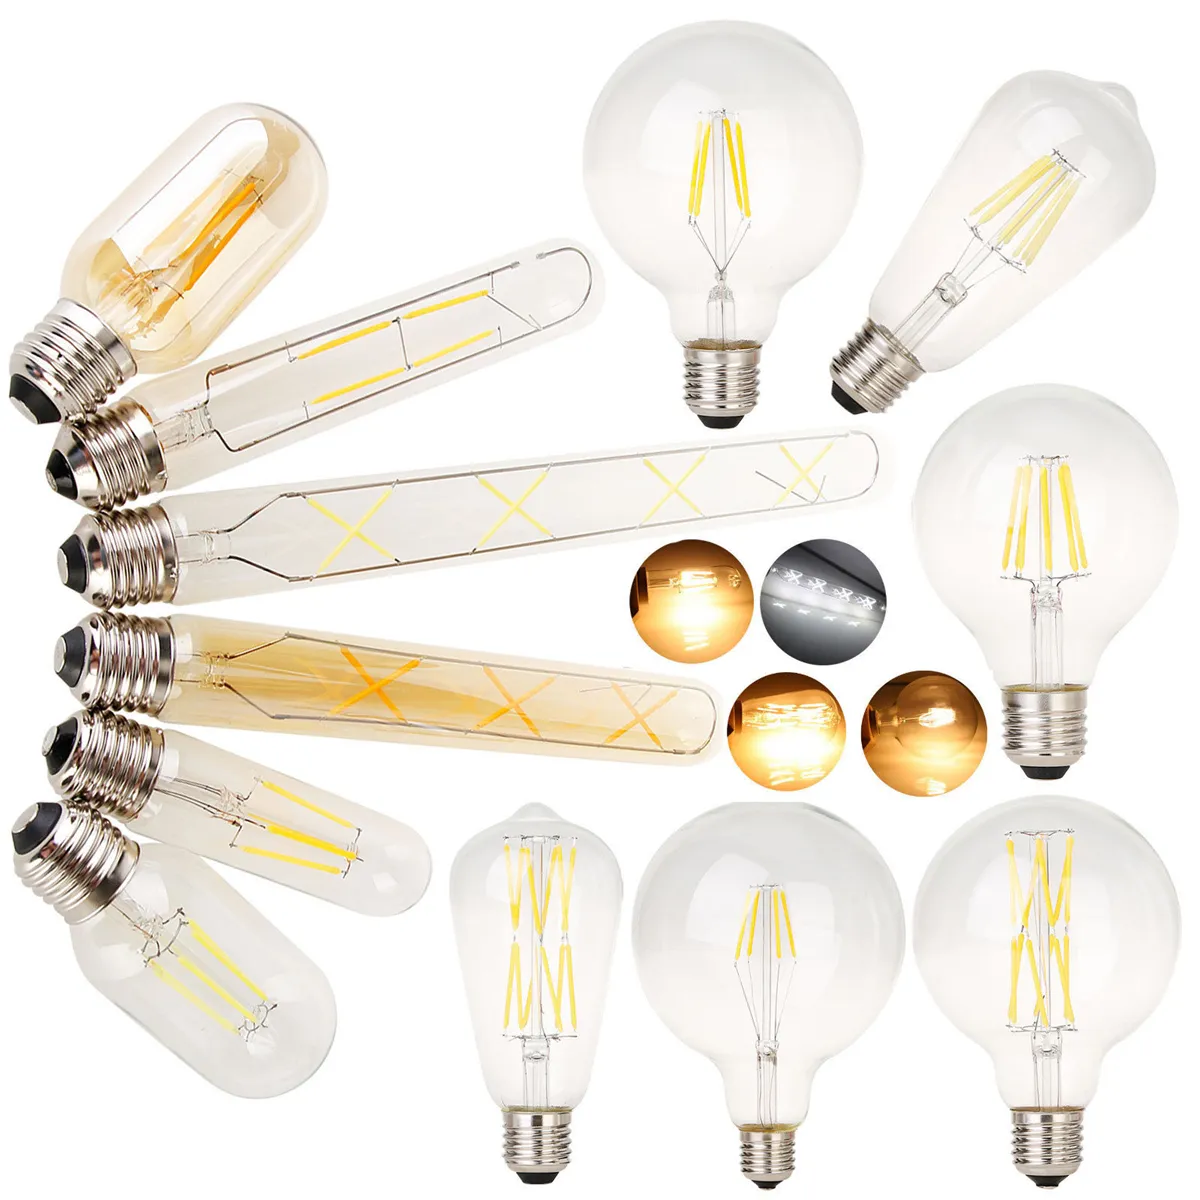 2W 4W 6W 8W LED Filament işık lambası kısılabilir LED ampul A60 A60 C35 T45 T30 G45 G80 G95 G125 Vintage stil LED Edison ampuller